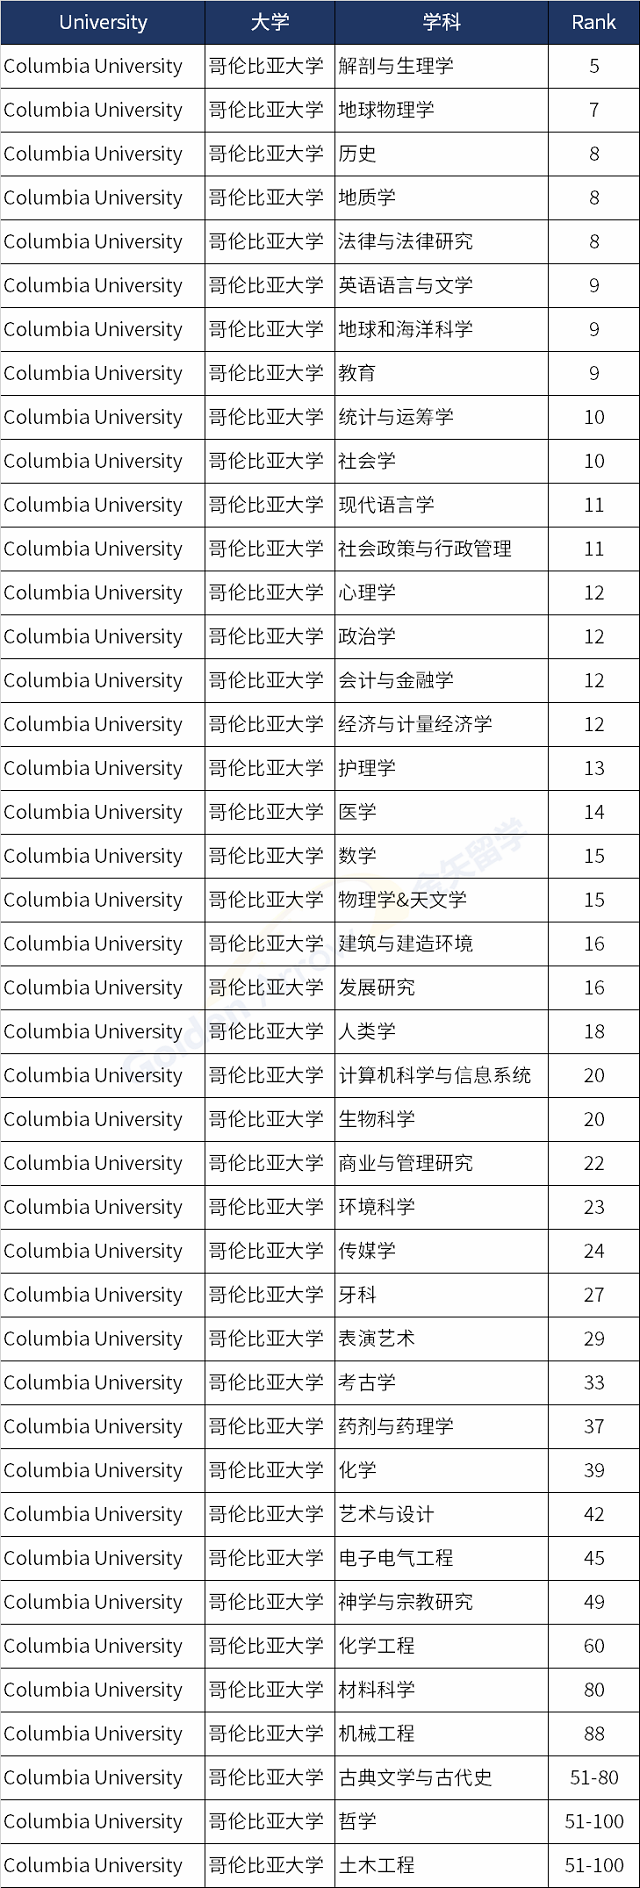 美国哥伦比亚大学世界排名前100学科.png